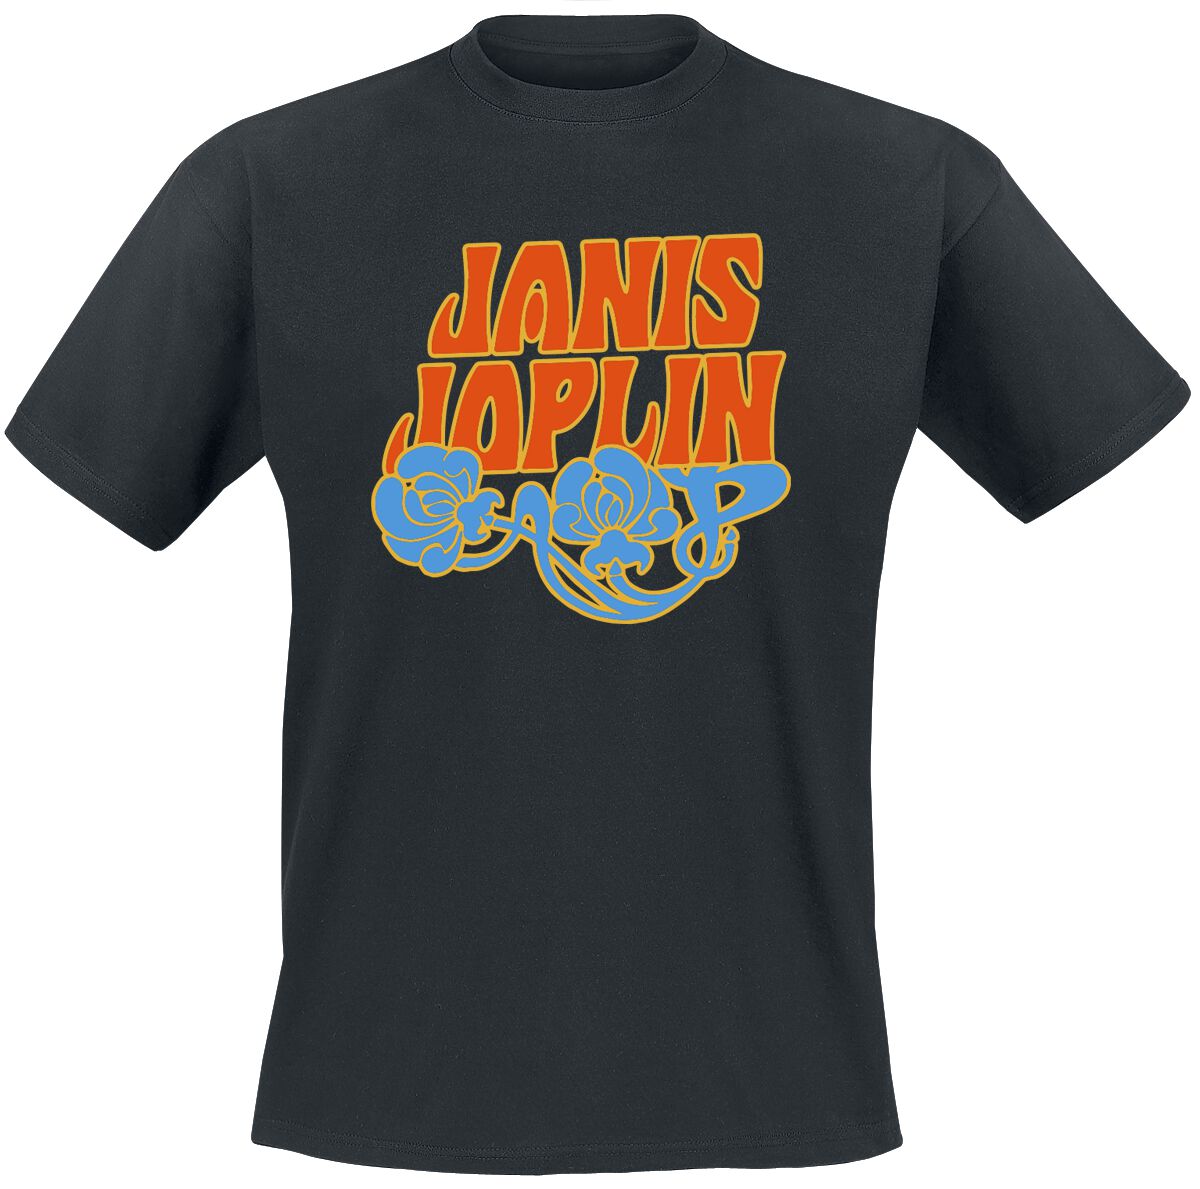 Levně Joplin, Janis Floral Logo Tričko černá